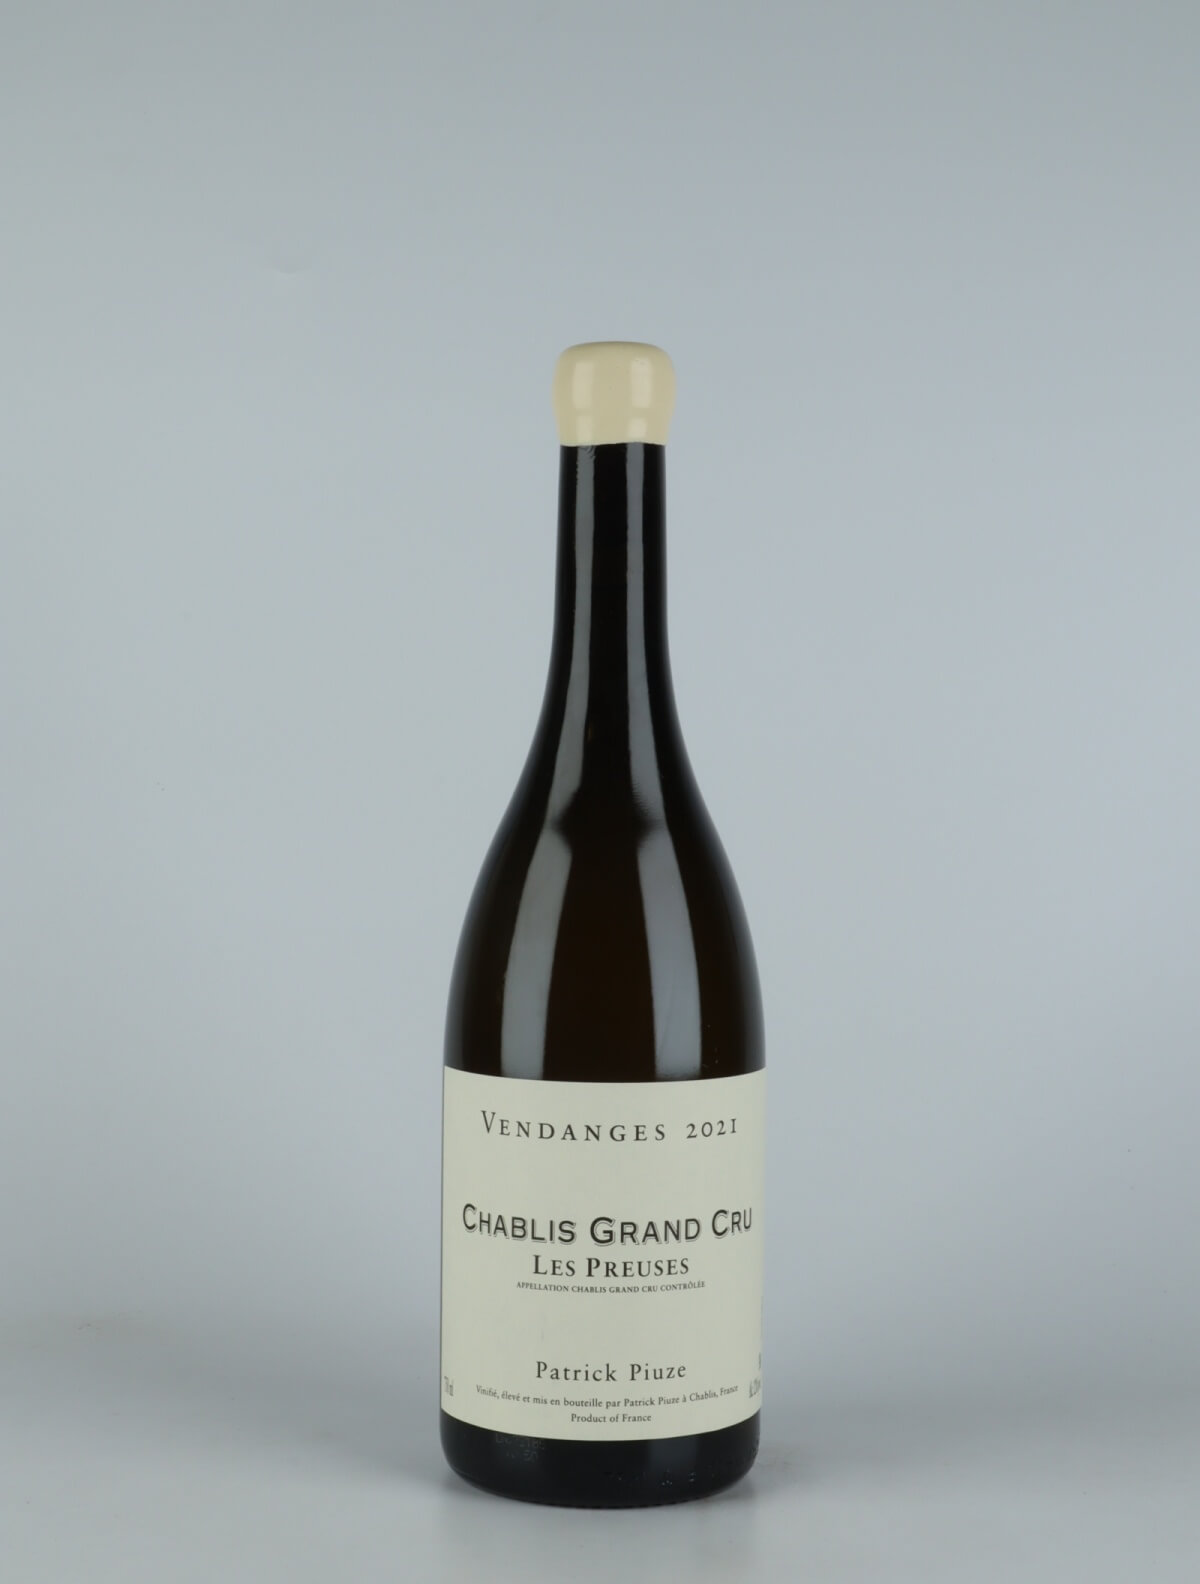 En flaske 2021 Chablis Grand Cru - Les Preuses Hvidvin fra Patrick Piuze, Bourgogne i Frankrig